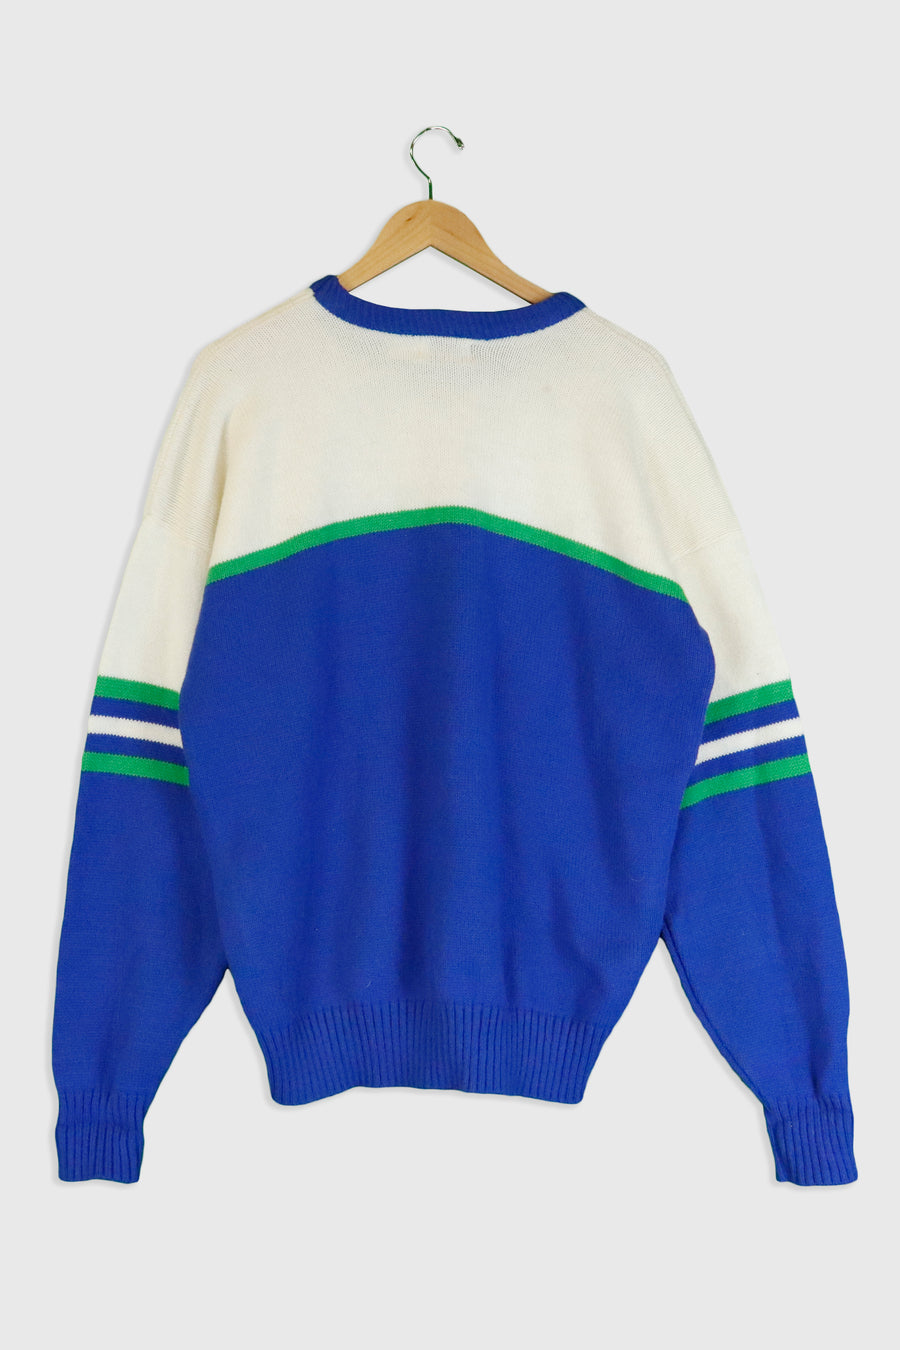 Vintage Kawasaki Knit Sweatshirt Sz XL